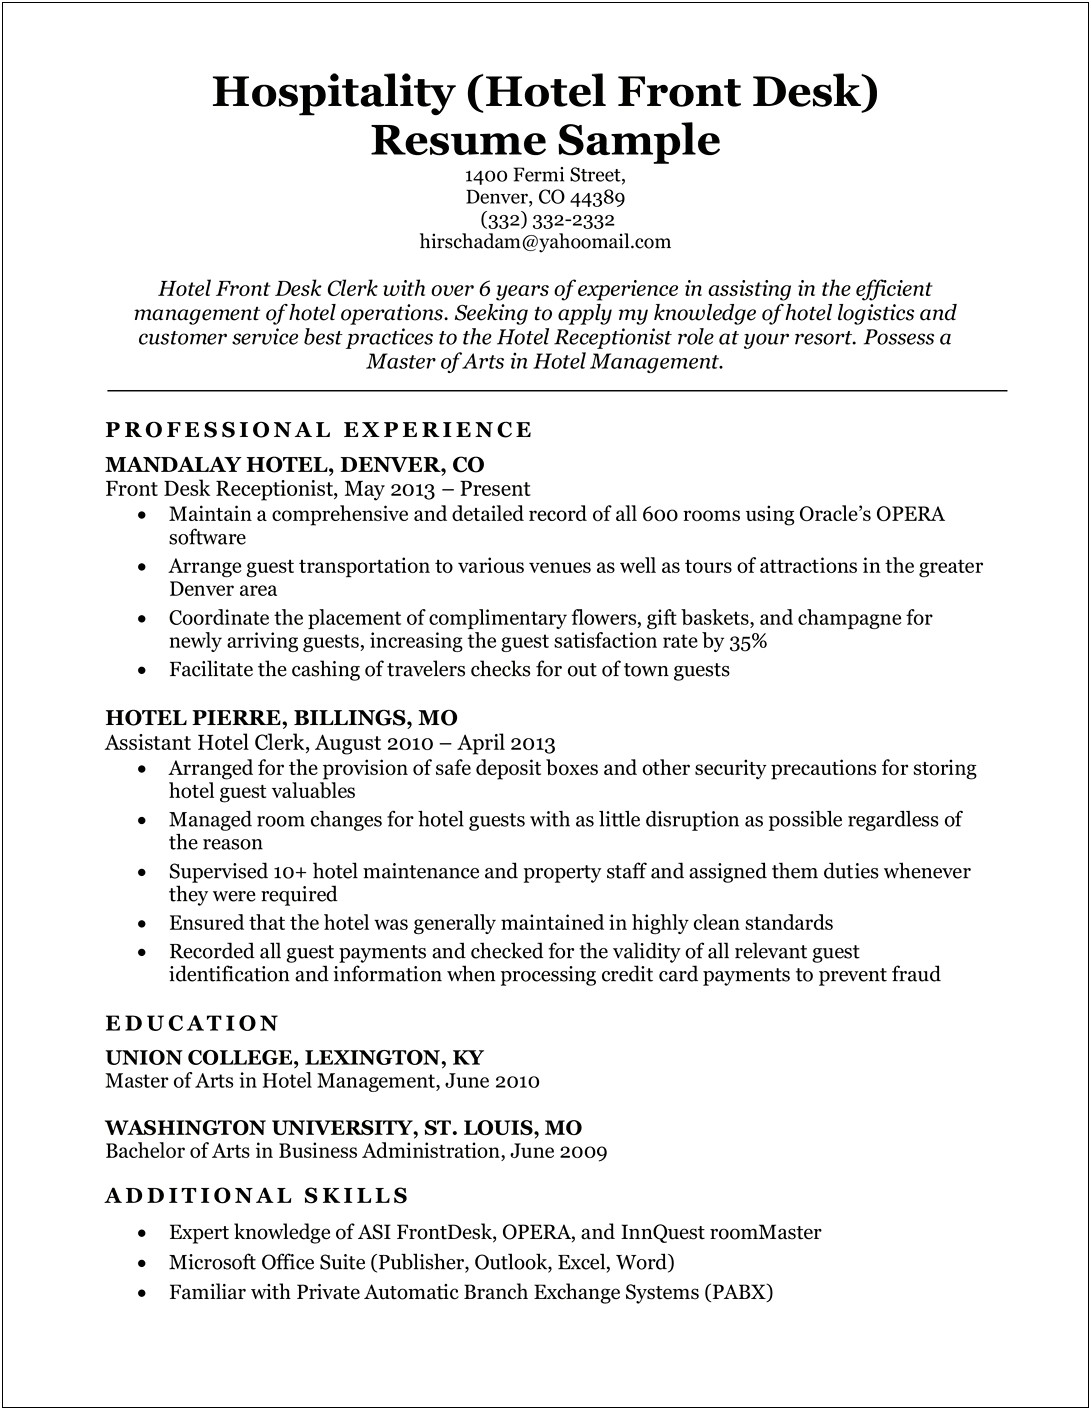 Applicant Resume Sample For Clerk